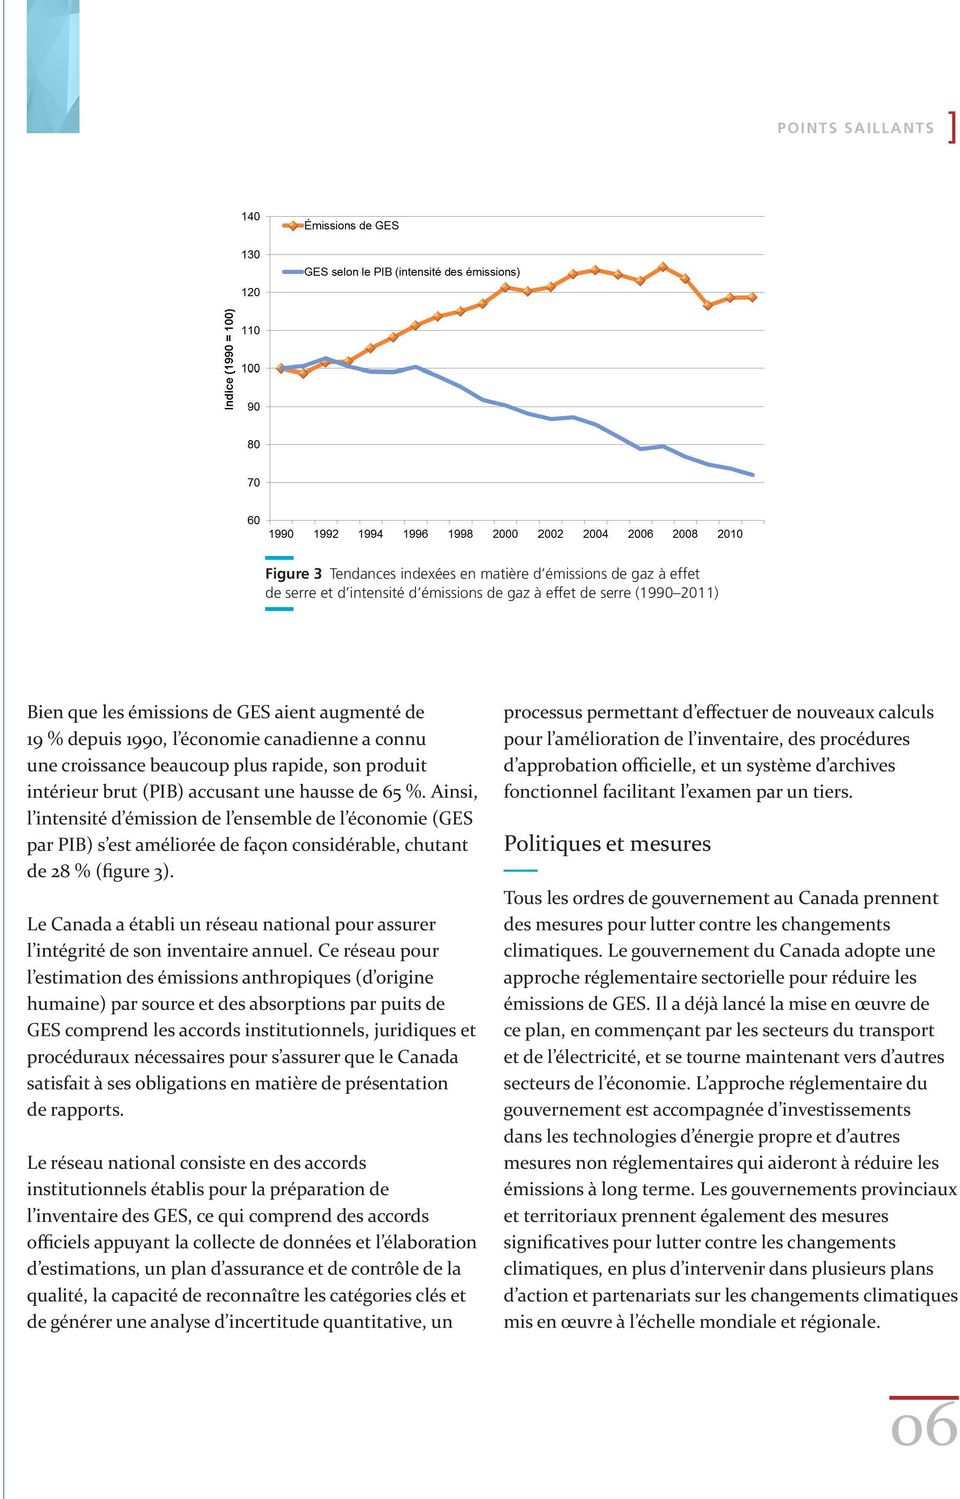 Ainsi, l intensité d émission de l ensemble de l économie (GES par PIB) s est améliorée de façon considérable, chutant de 28 % (figure 3).